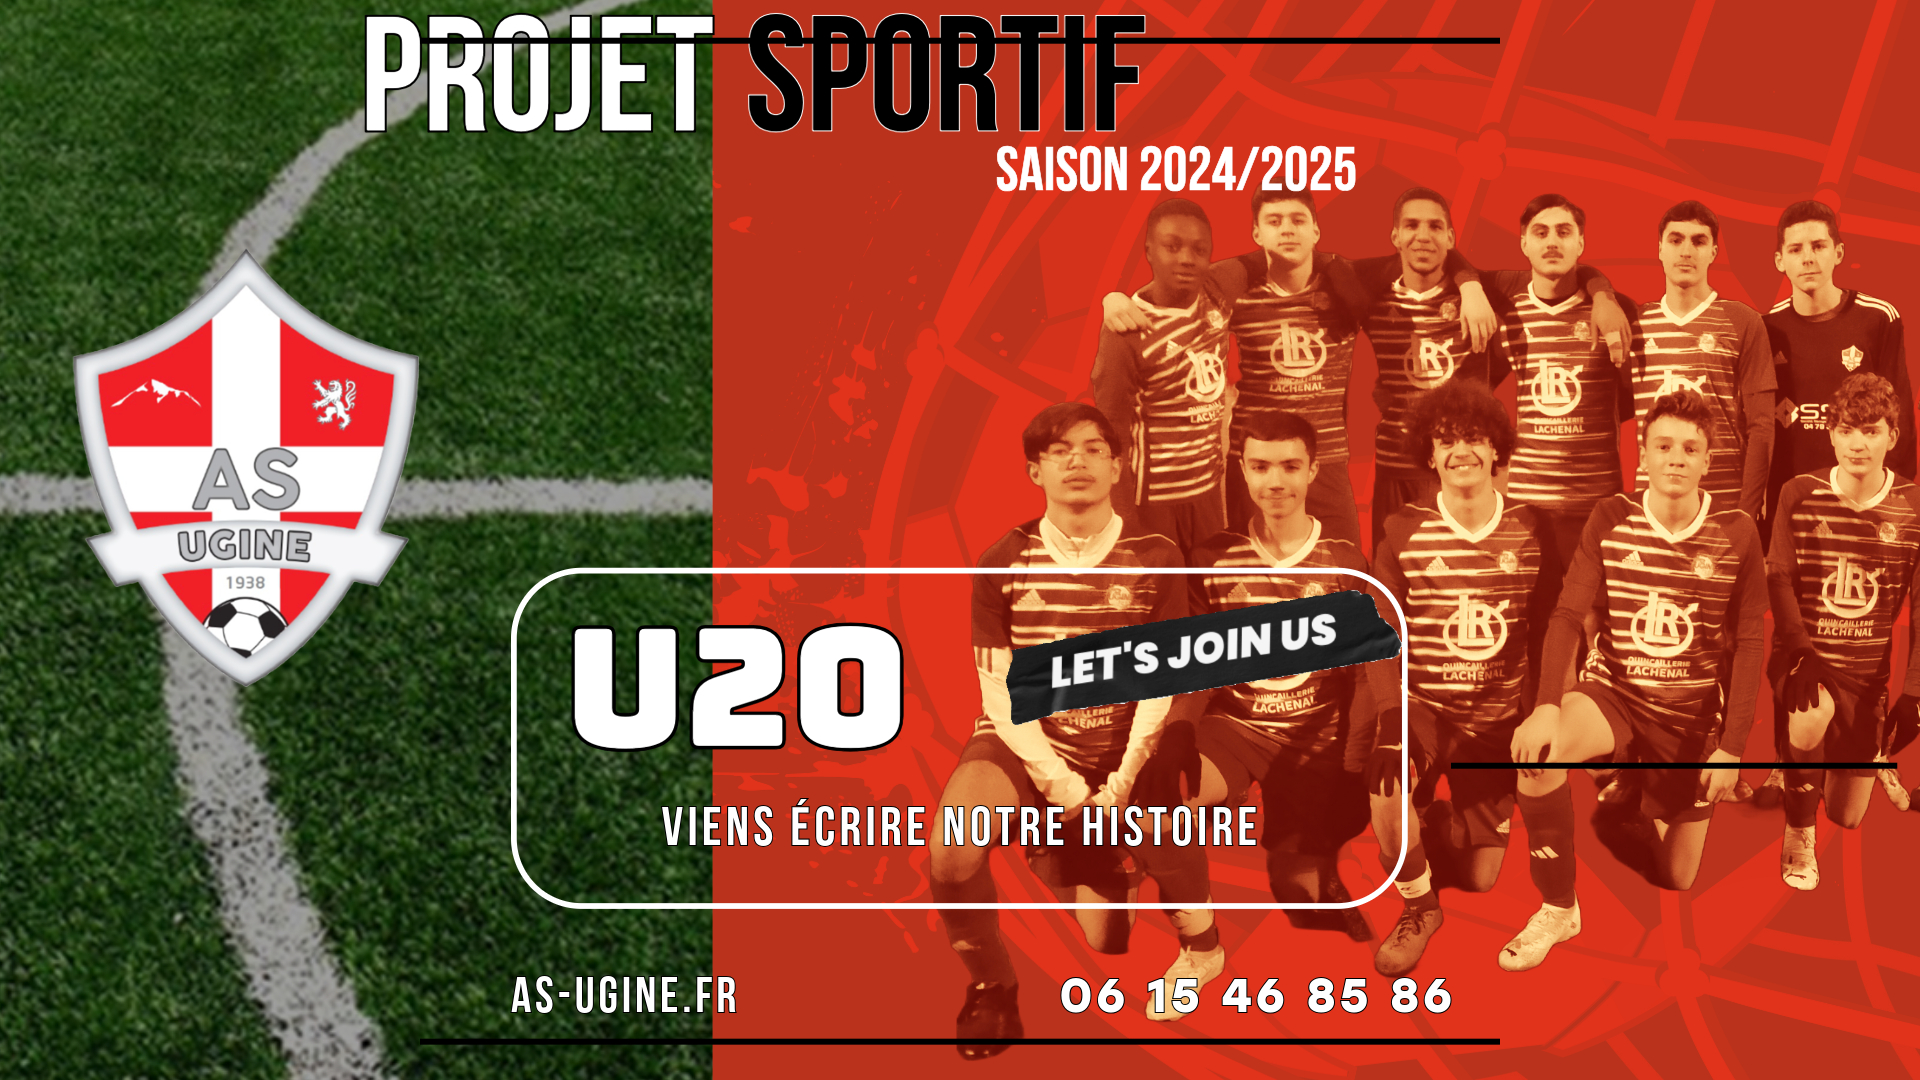 Le Projet Sportif 2024/2025 de l'AS Ugine - Une équipe U20